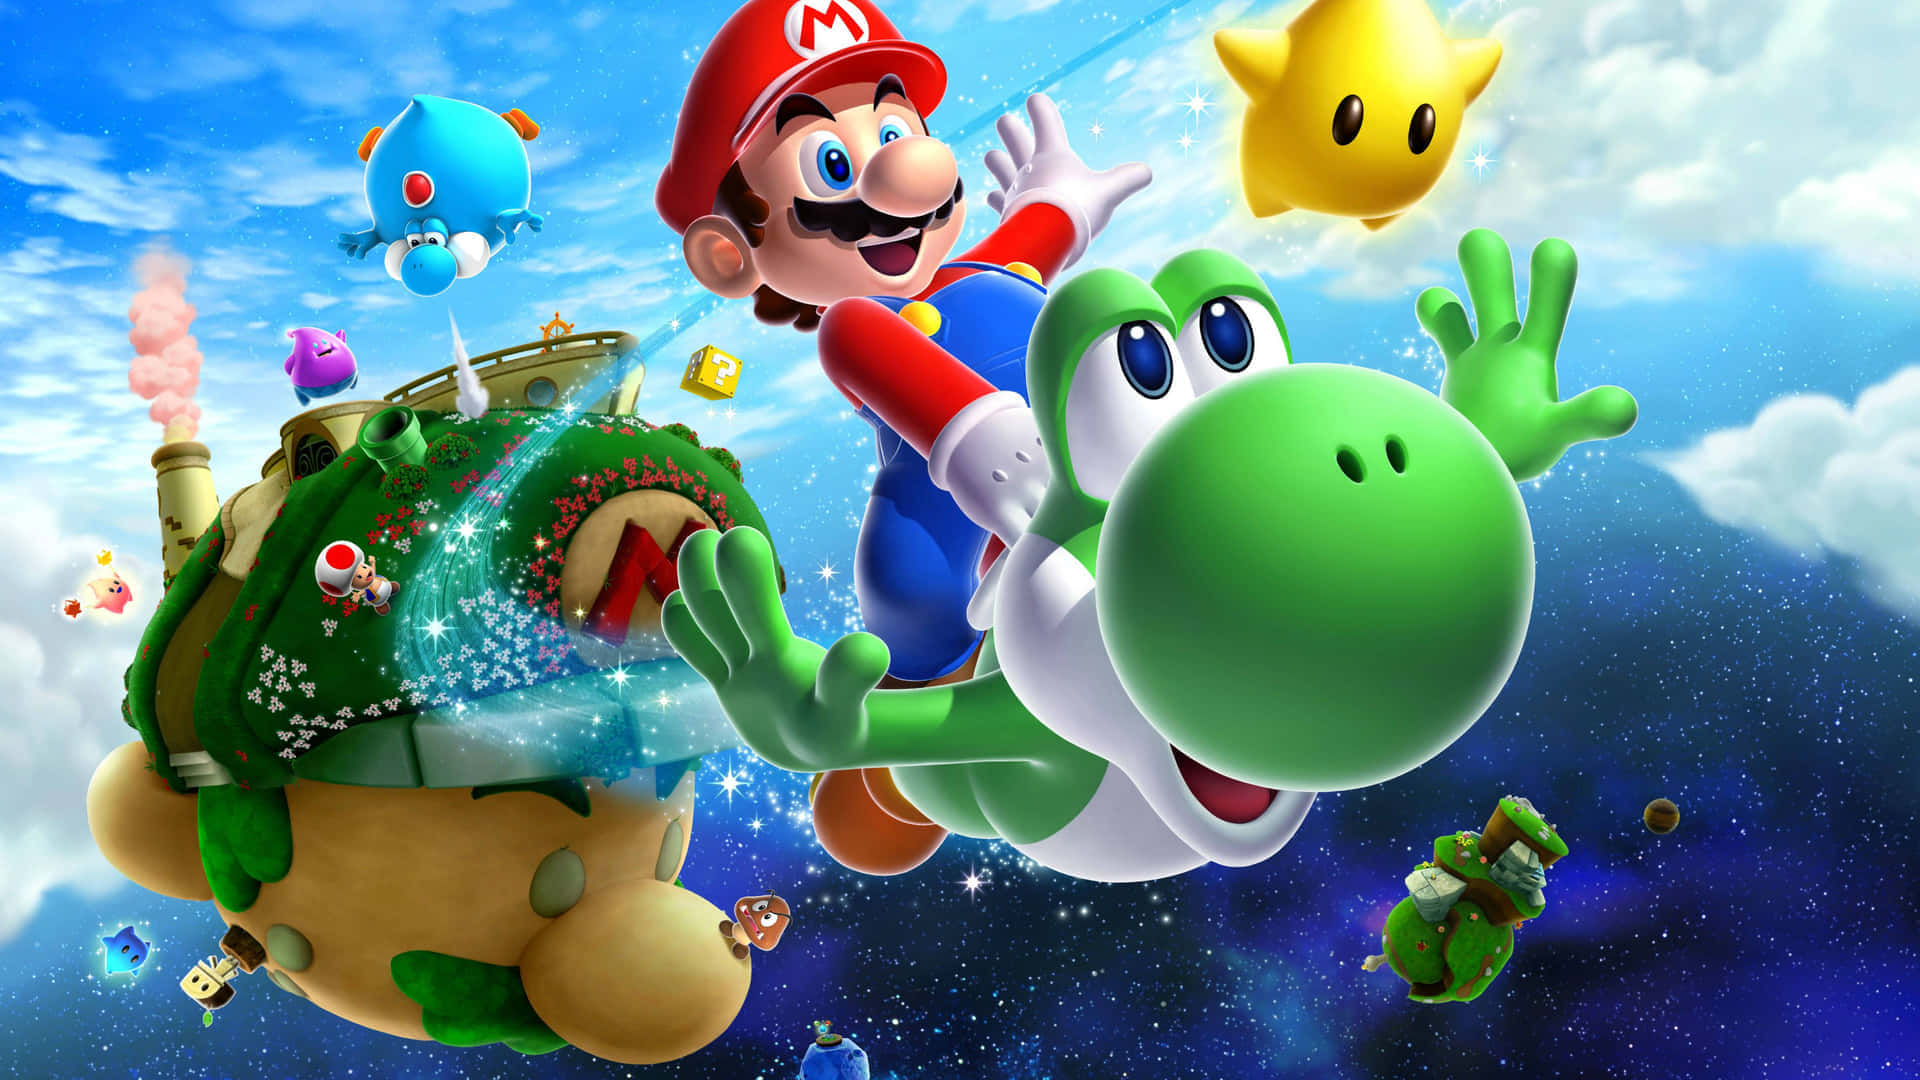 Super Cool 3D Mario Galaxy Characters Wallpaper